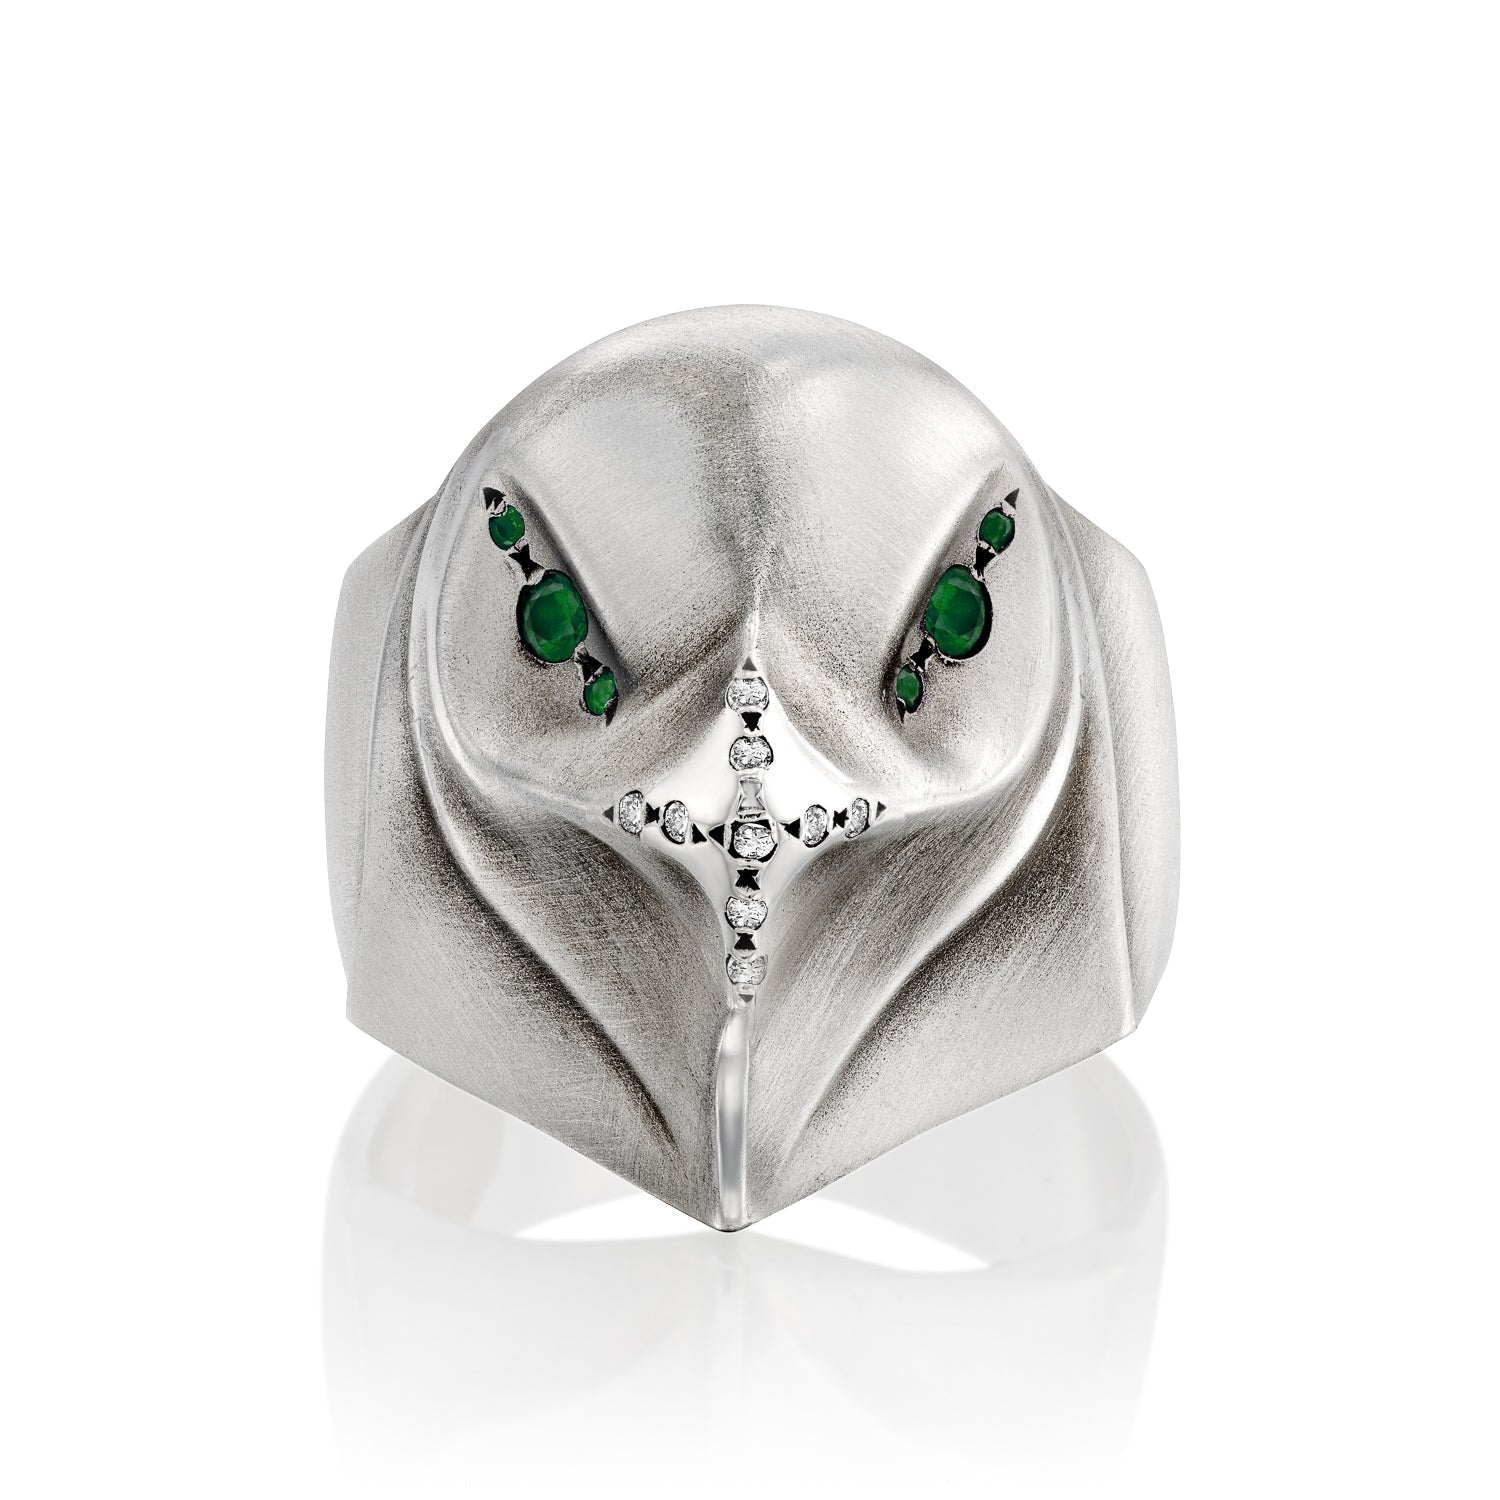 ELINA GLEIZER Eagle Ring With Emerald Eyes & White Diamond Beak